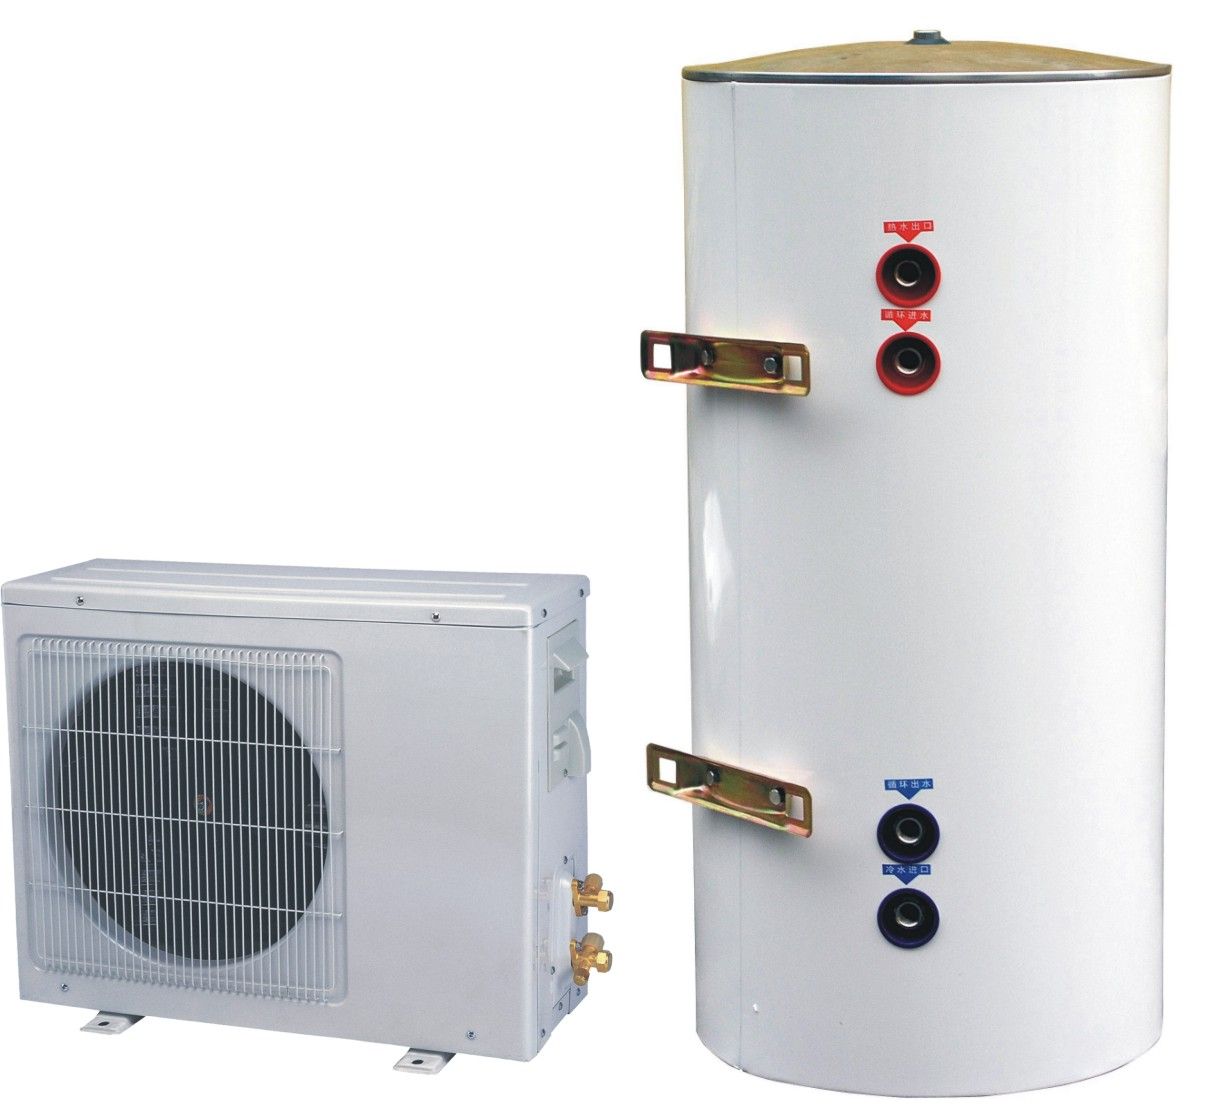 空气源热泵热水器的节能功能